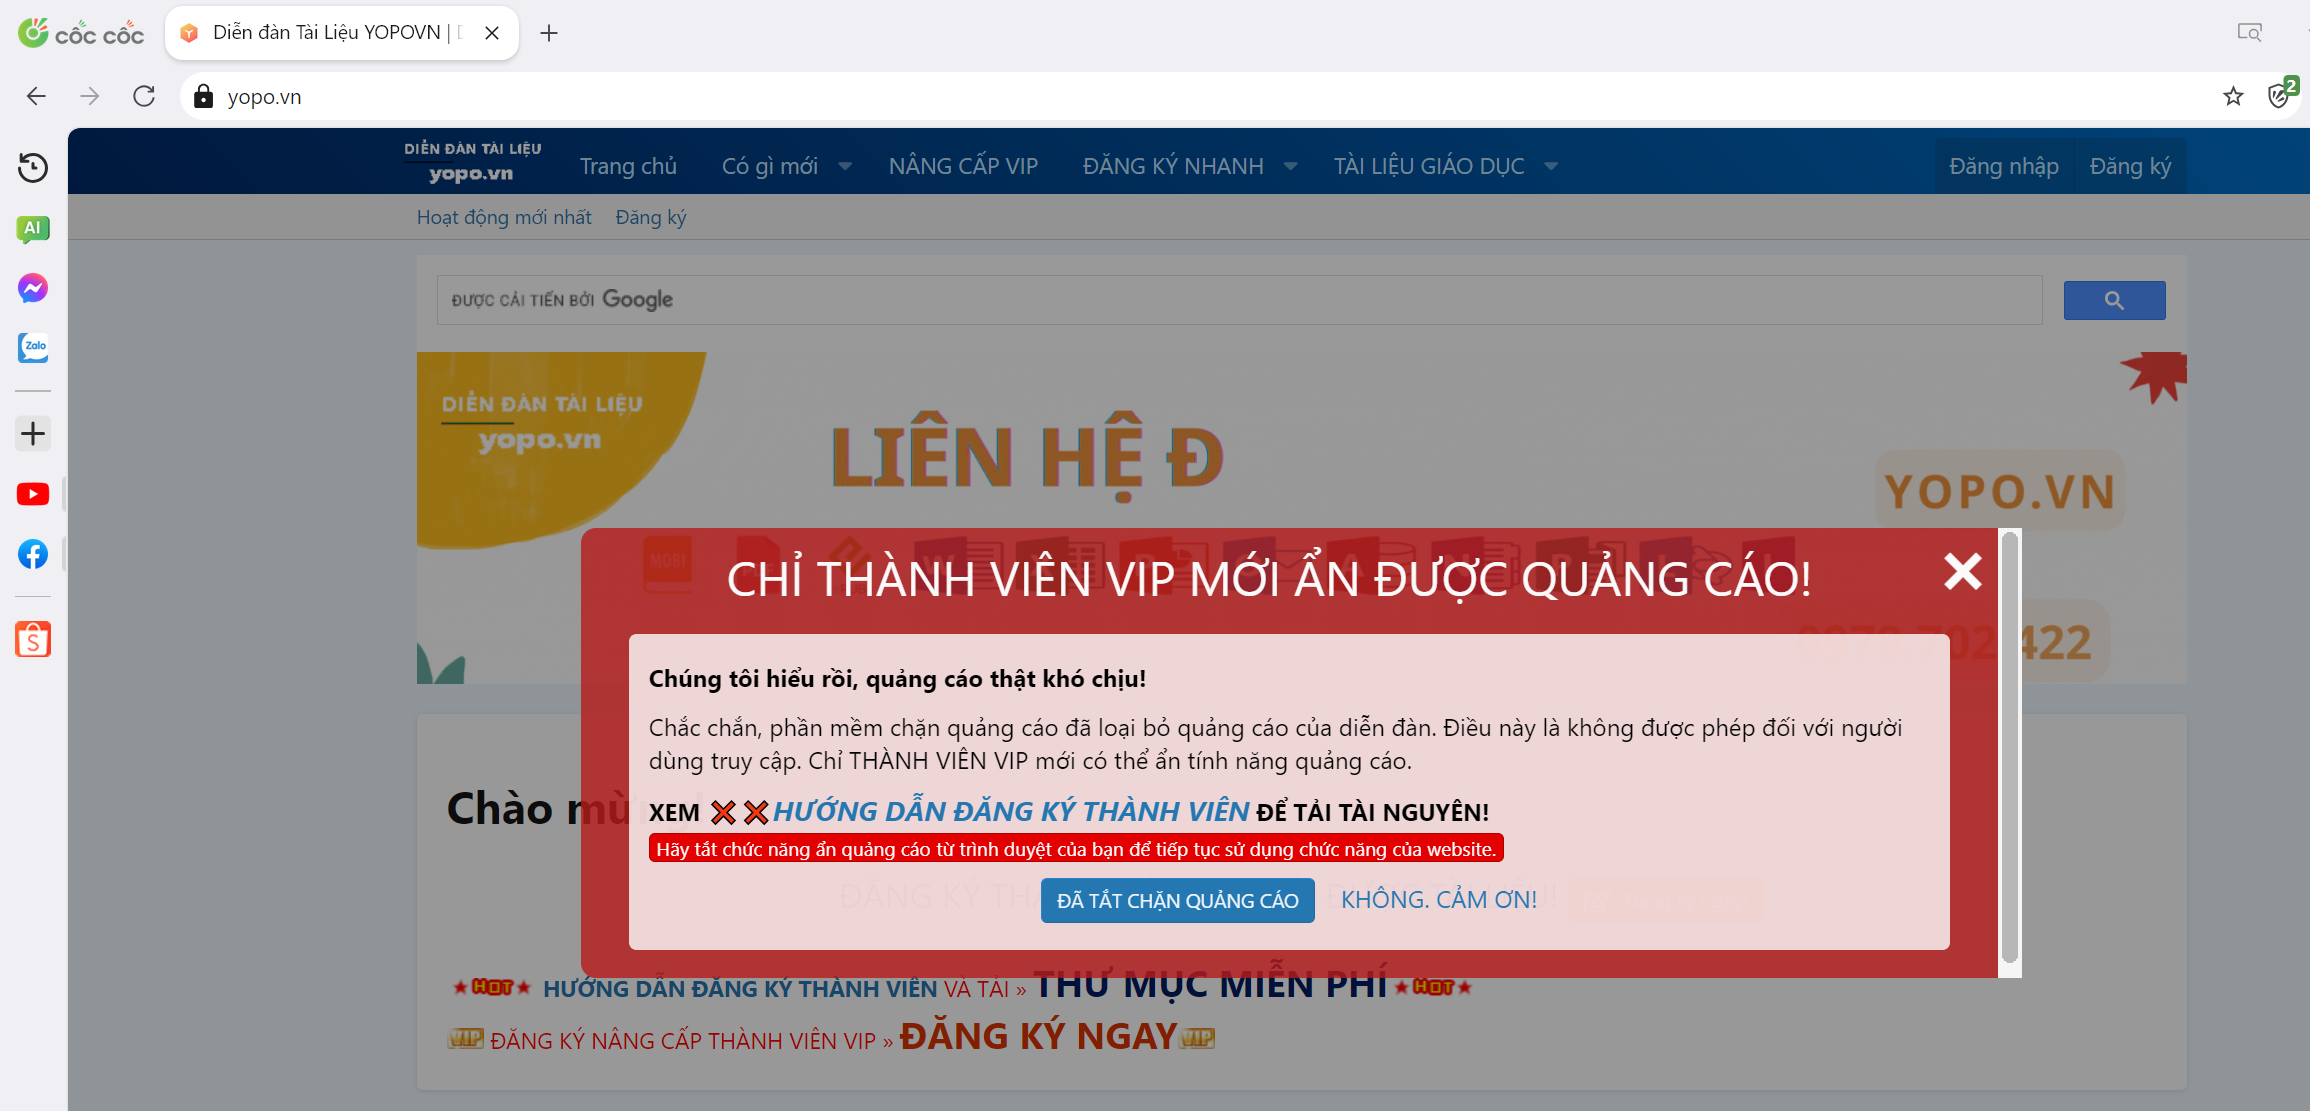 V/v: khách và thành viên thường không thể "ẨN" quảng cáo của diễn đàn yopo.vn